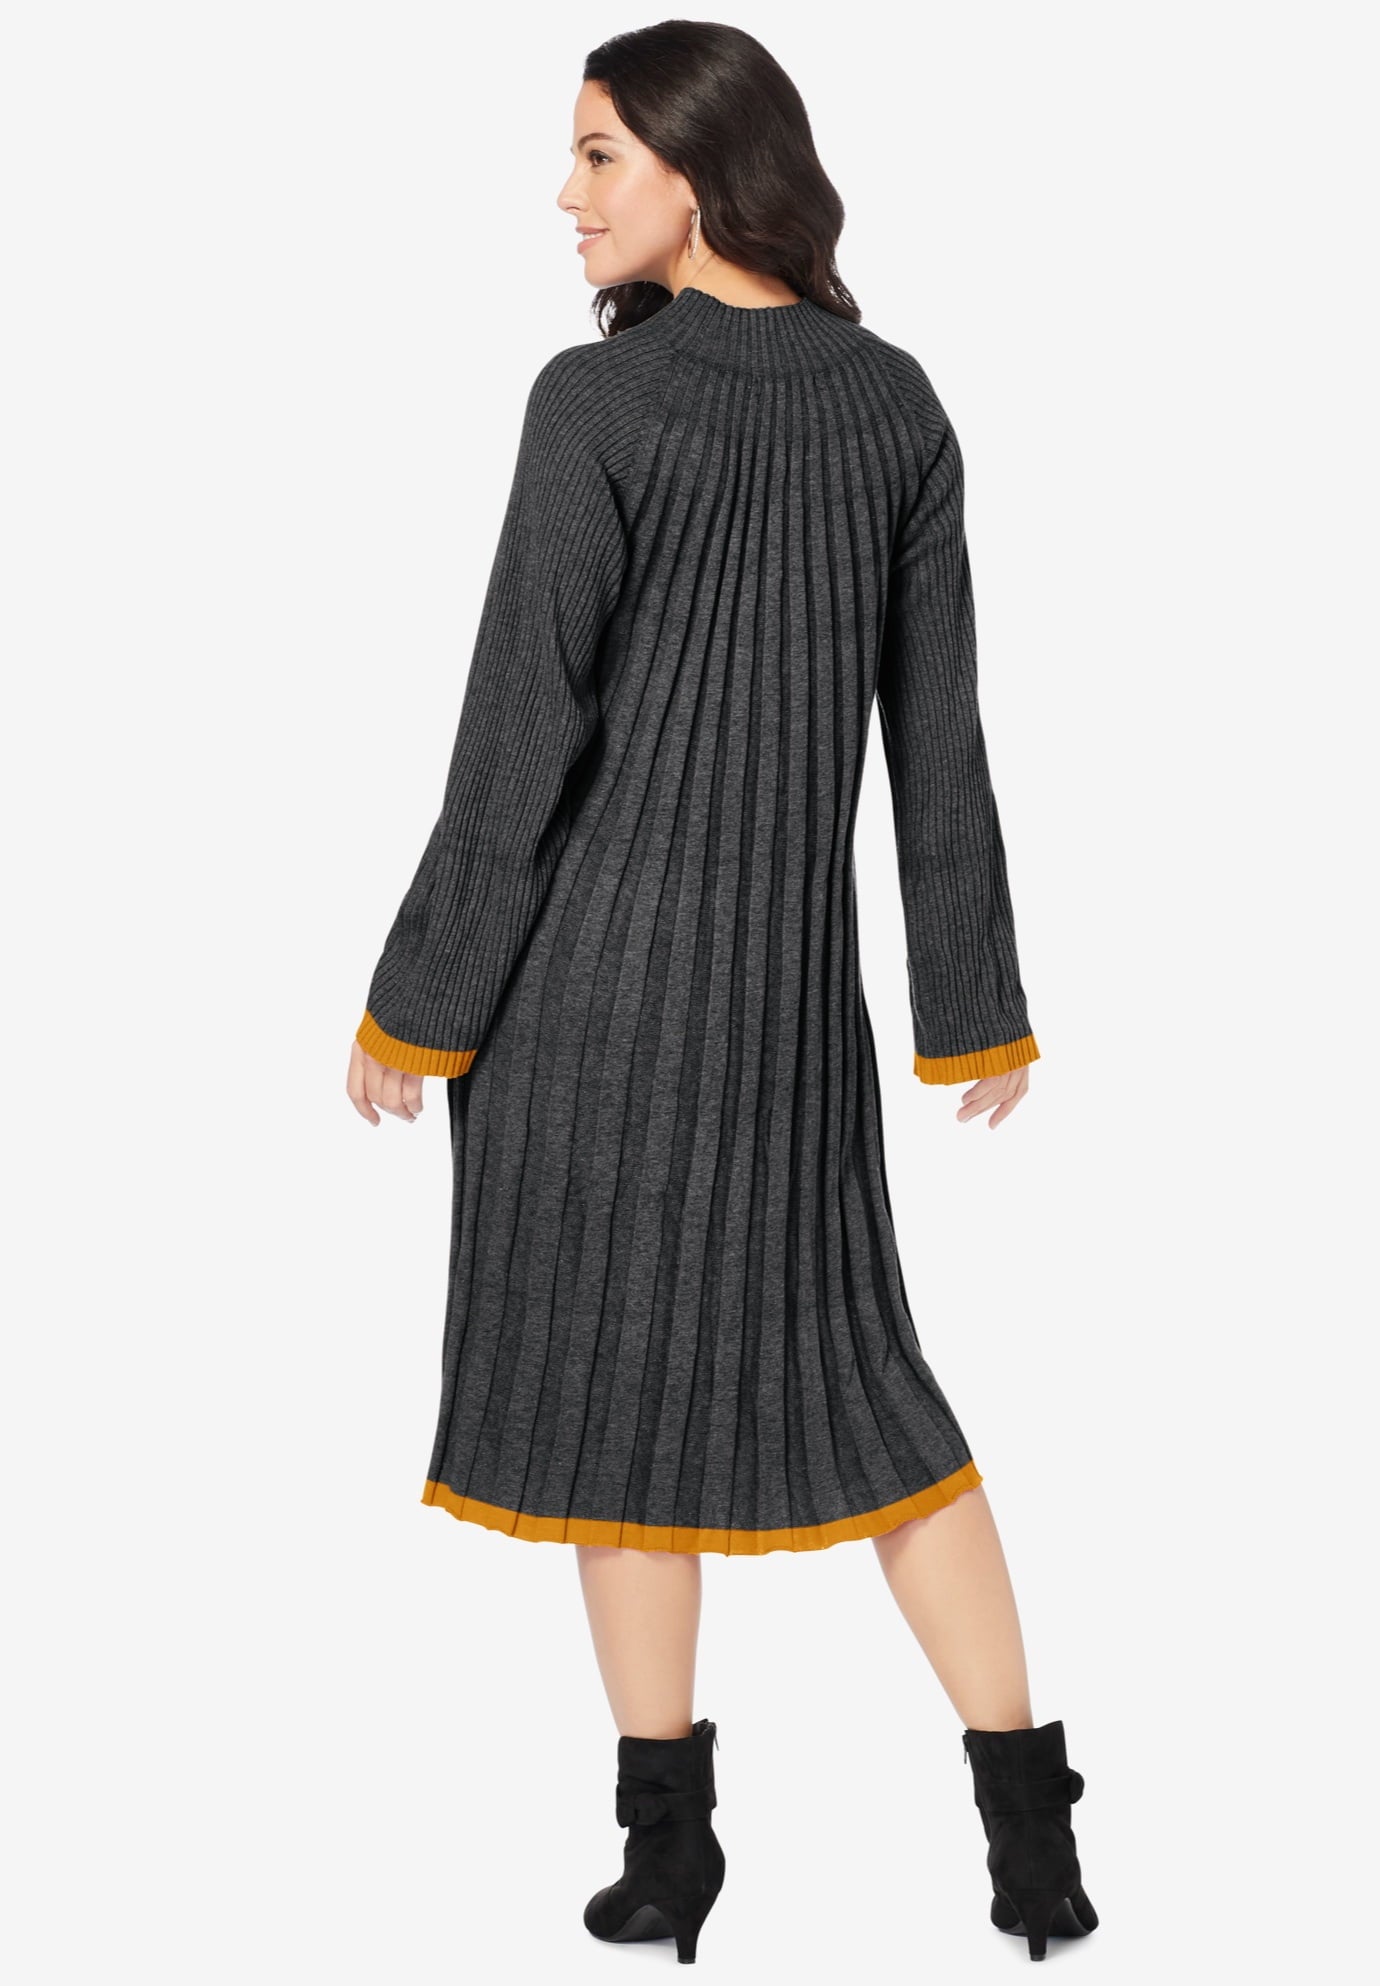 Roaman's Women's Plus Size Swing Sweater Dress Mock Turtleneck Wide Sleeves - image 3 of 5